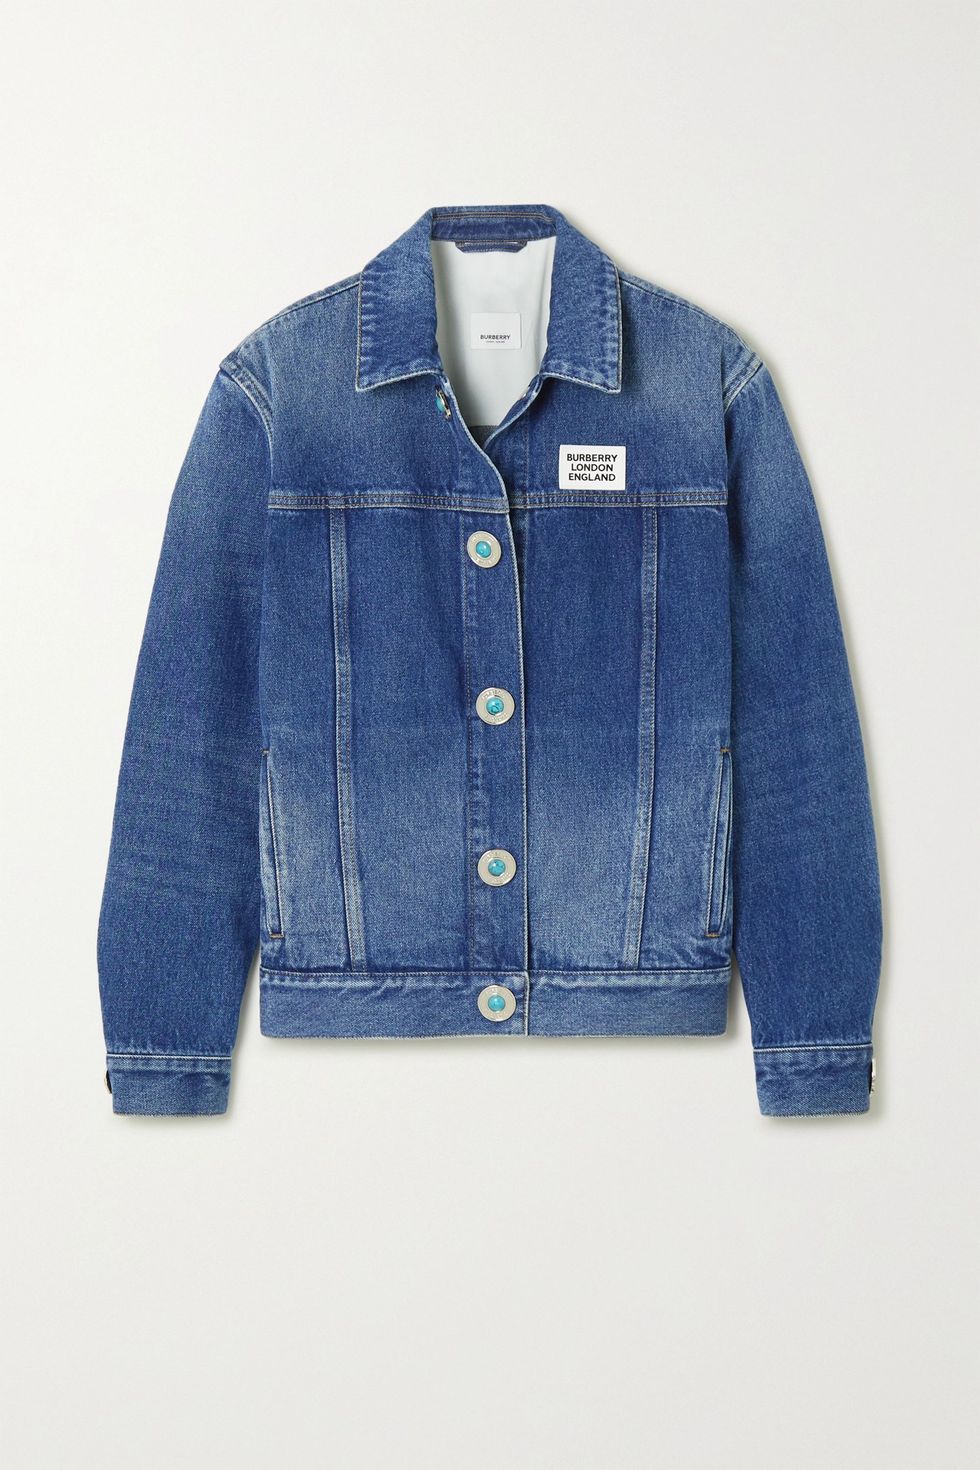 Jean Jacket Outfit Ideas - Best Ways to Wear a Denim Jacket